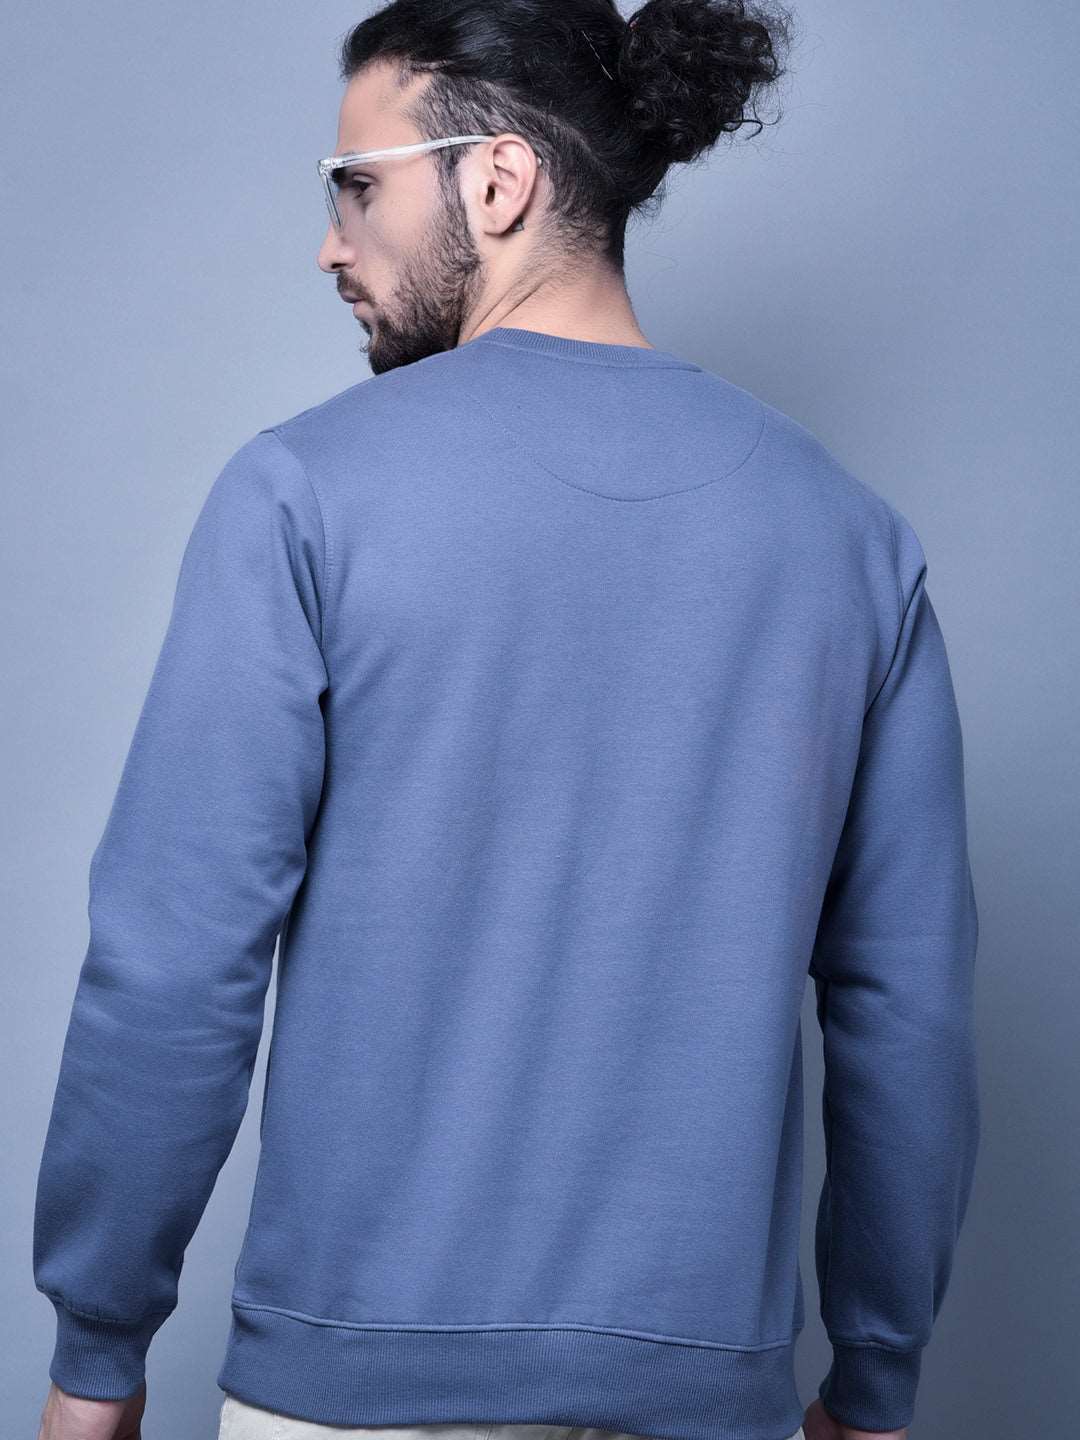 Cobb Blue Printed Round Neck Sweatshirt